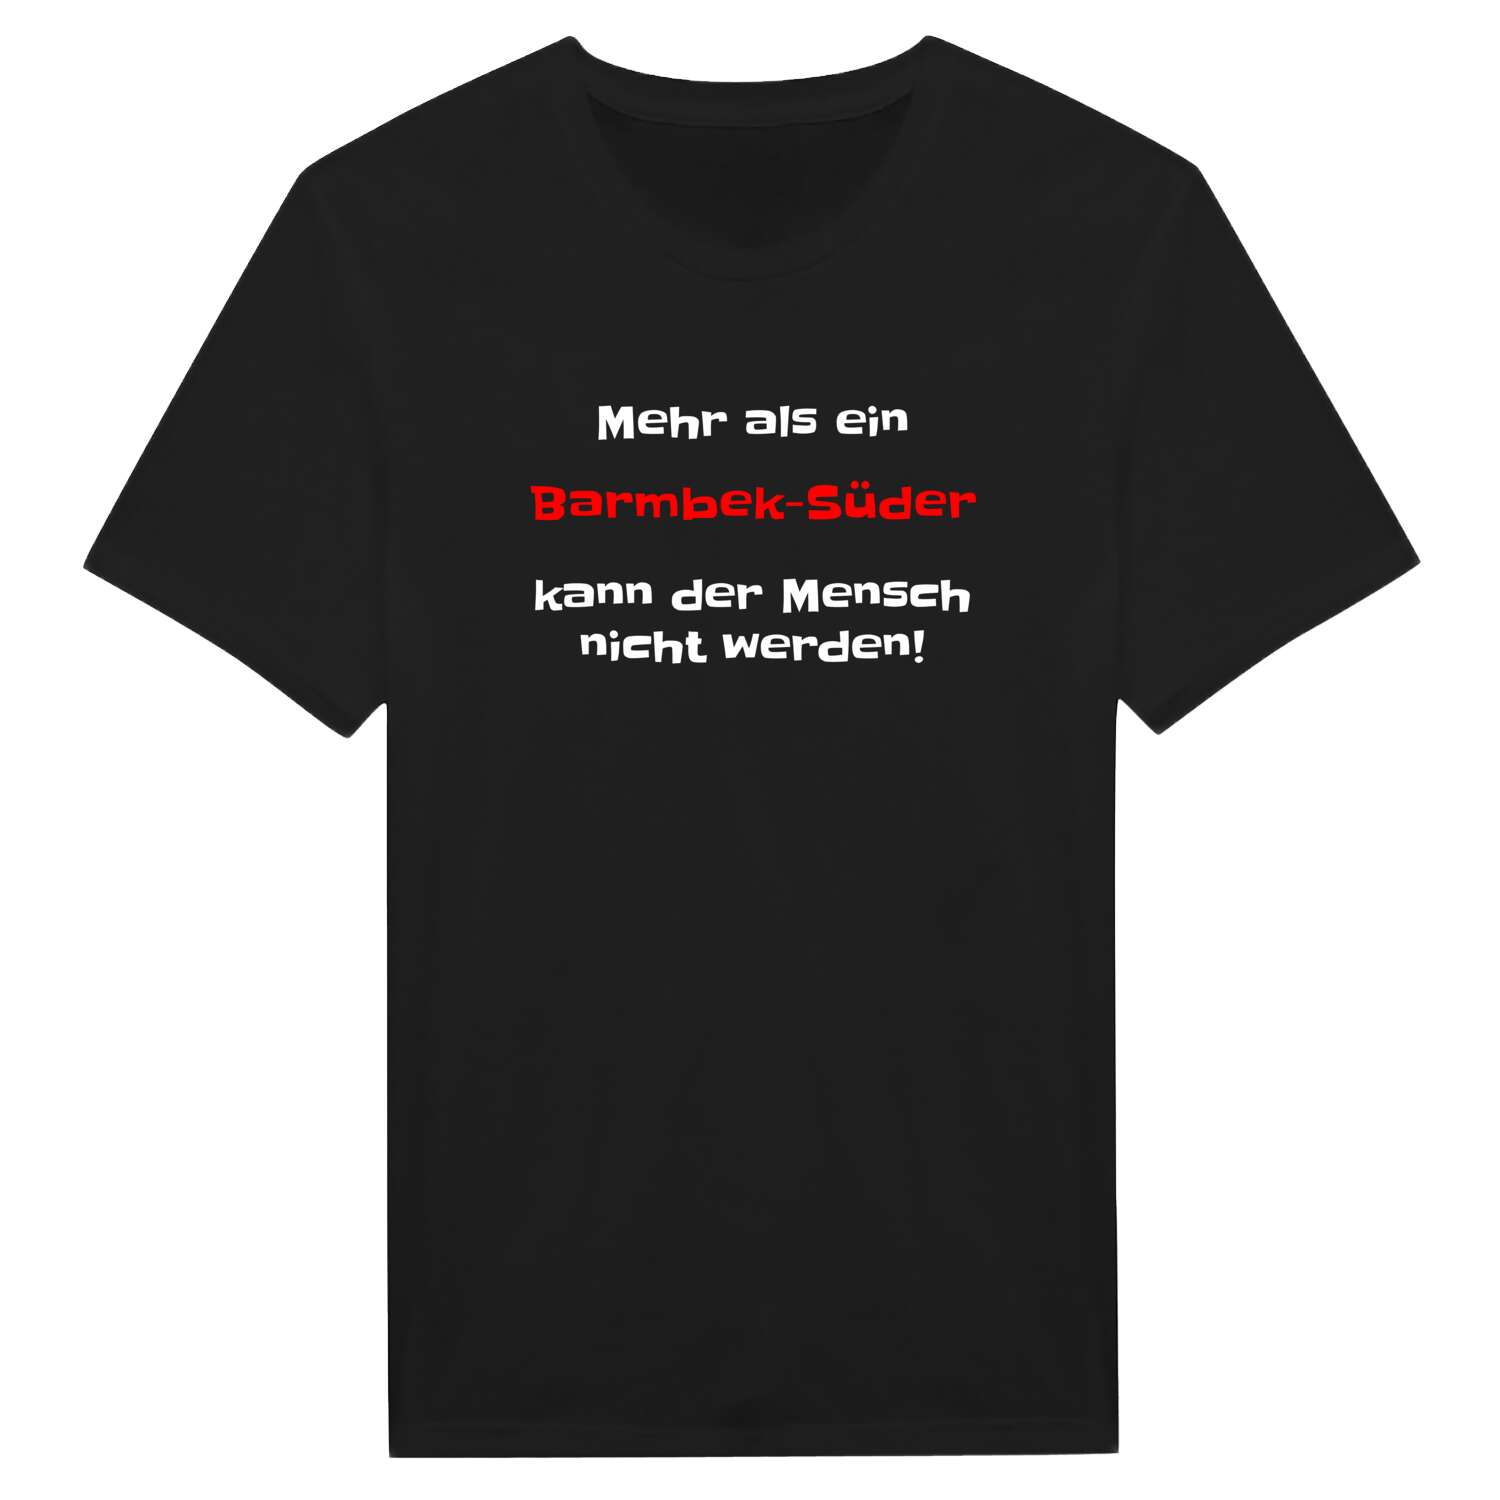 Barmbek-Süd T-Shirt »Mehr als ein«